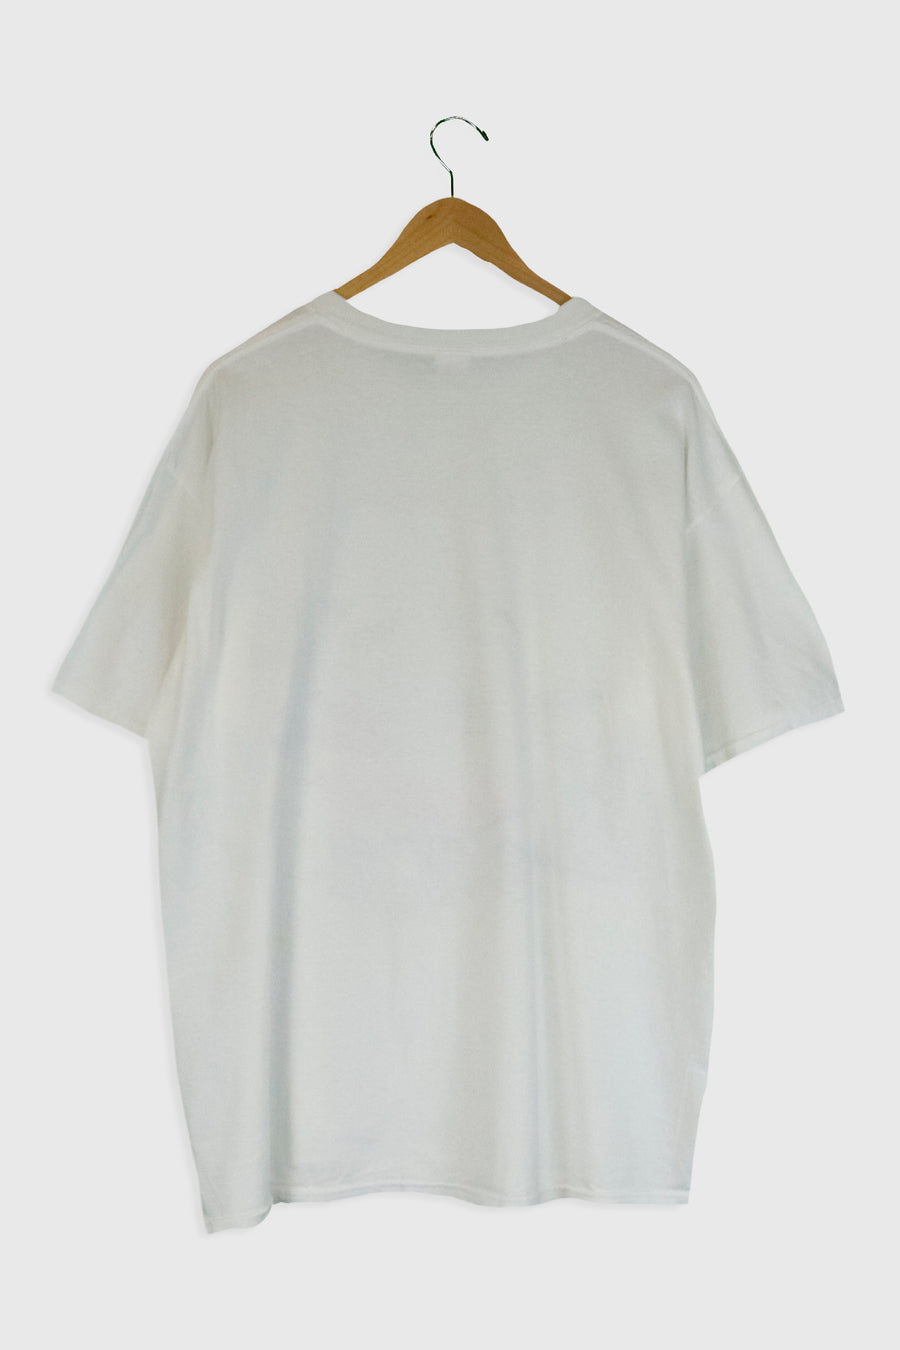 Vintage Three Days Grace T Shirt Sz XL